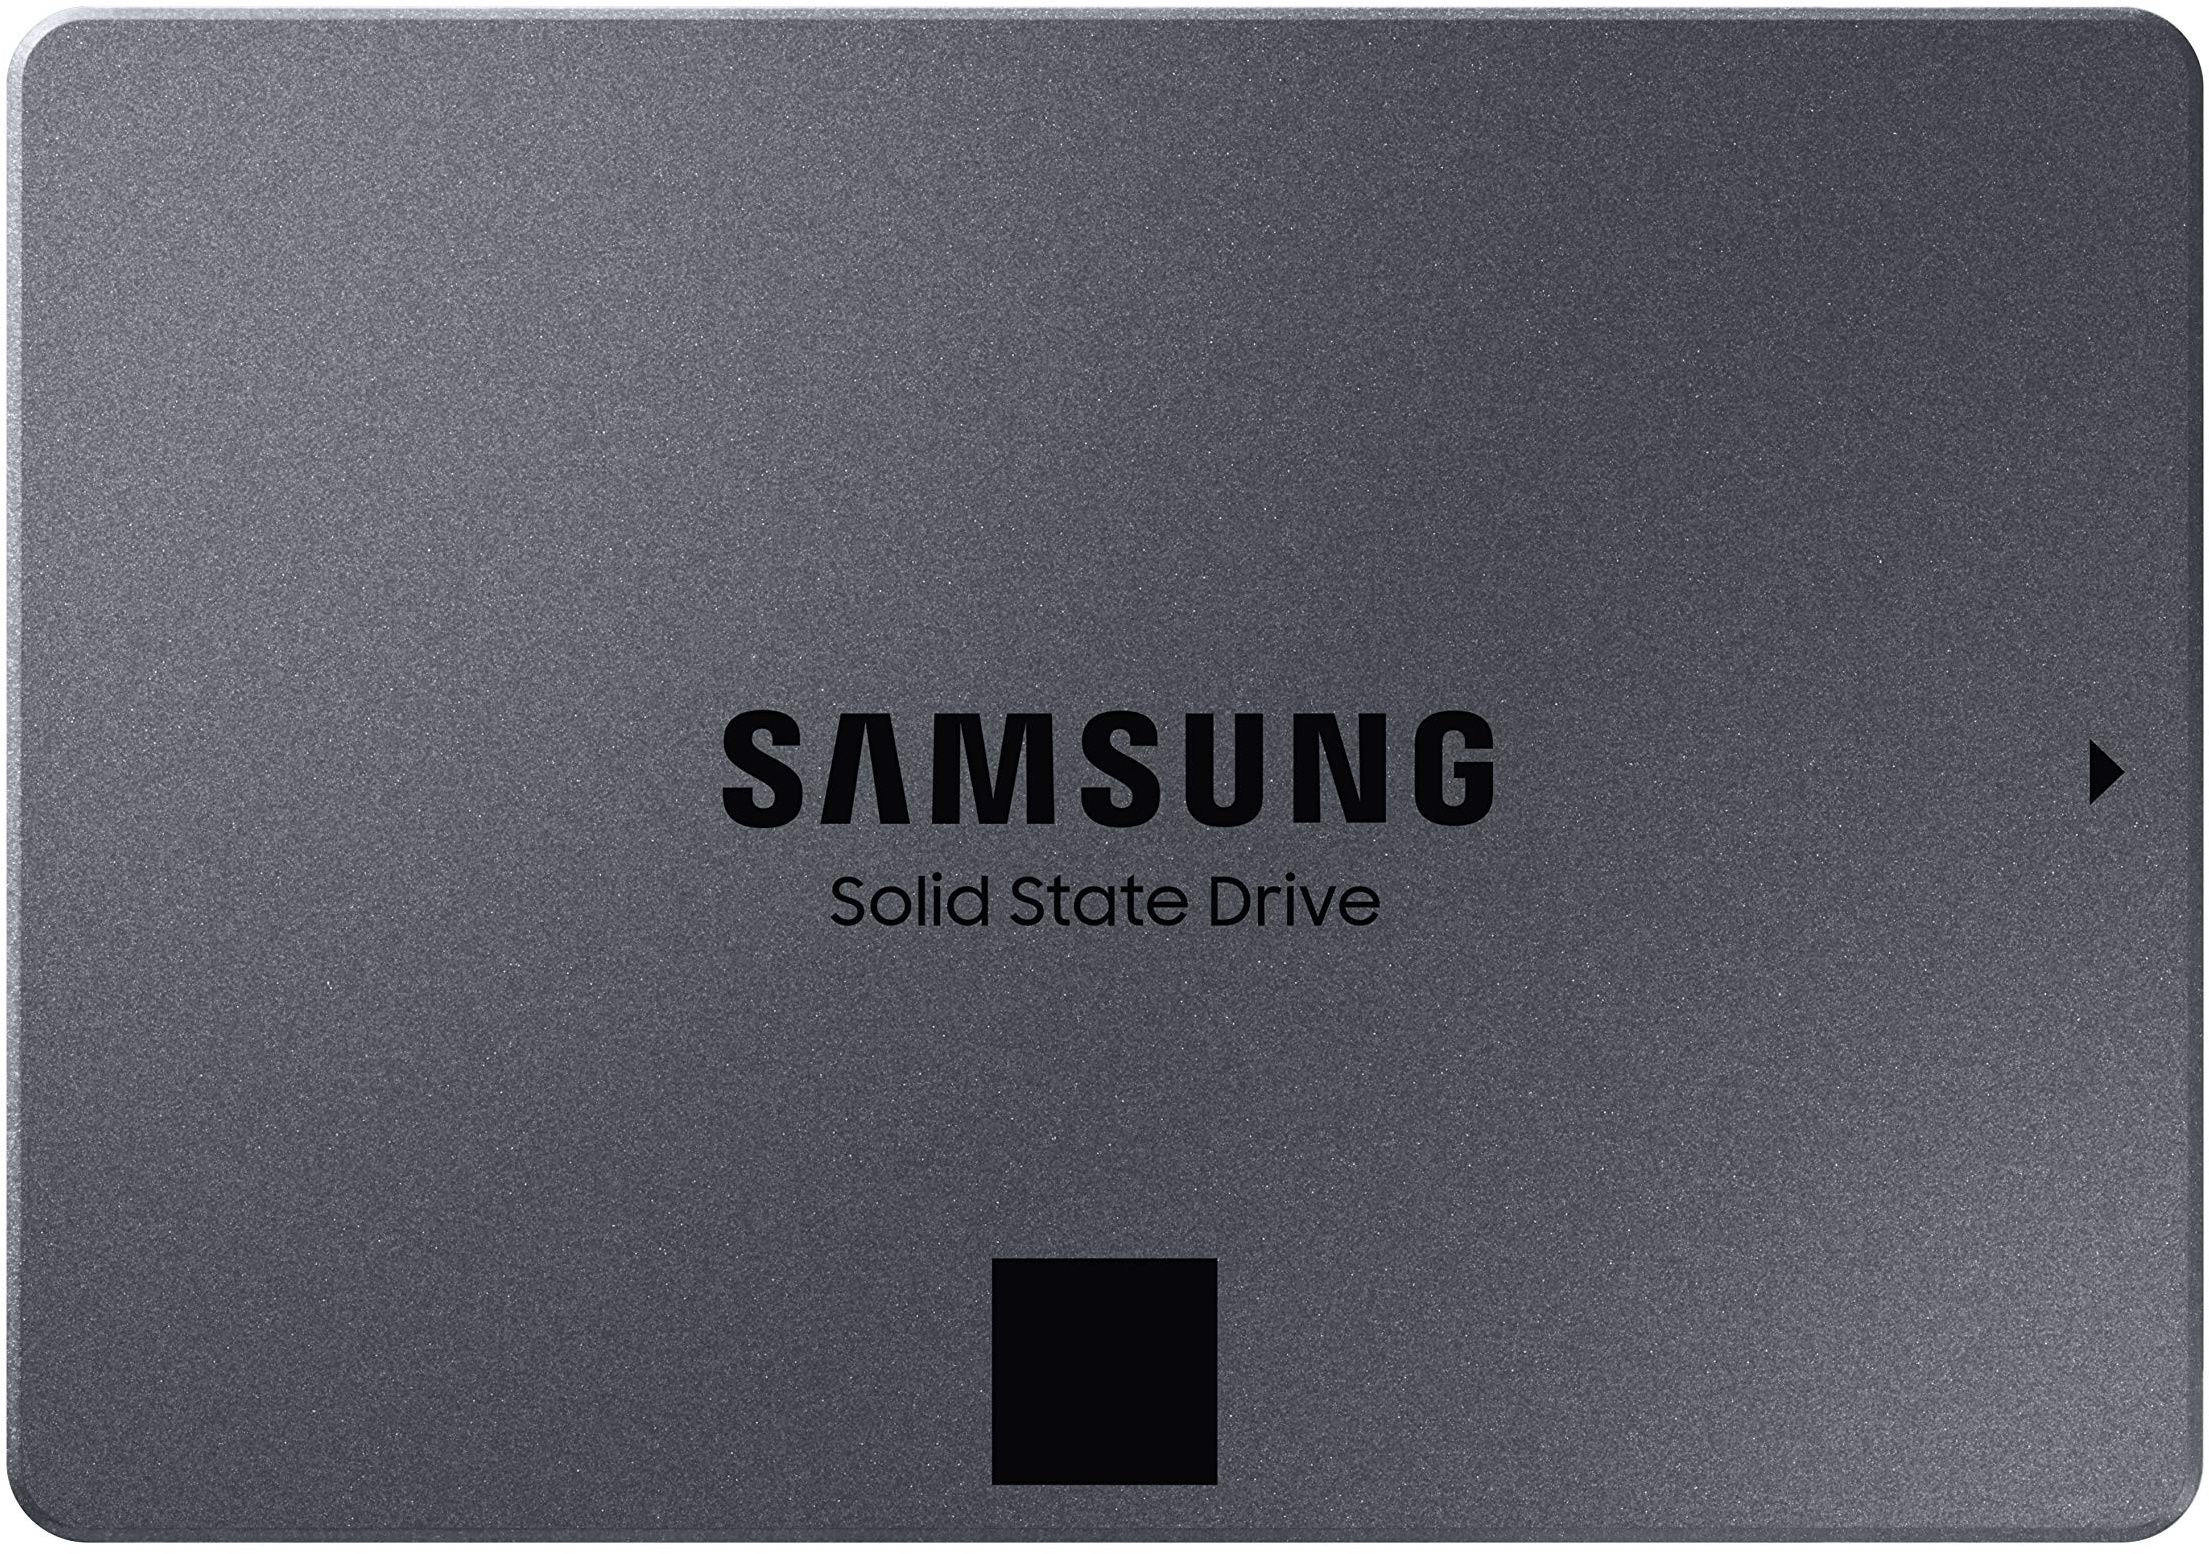 Samsung 870 QVO SATA III 2,5 Zoll SSD, 8 TB, 560 MB/s Lesen, 530 MB/s Schreiben, Interne SSD, schnelle Festplatte als Ersatz für HDD, MZ-77Q8T0BW